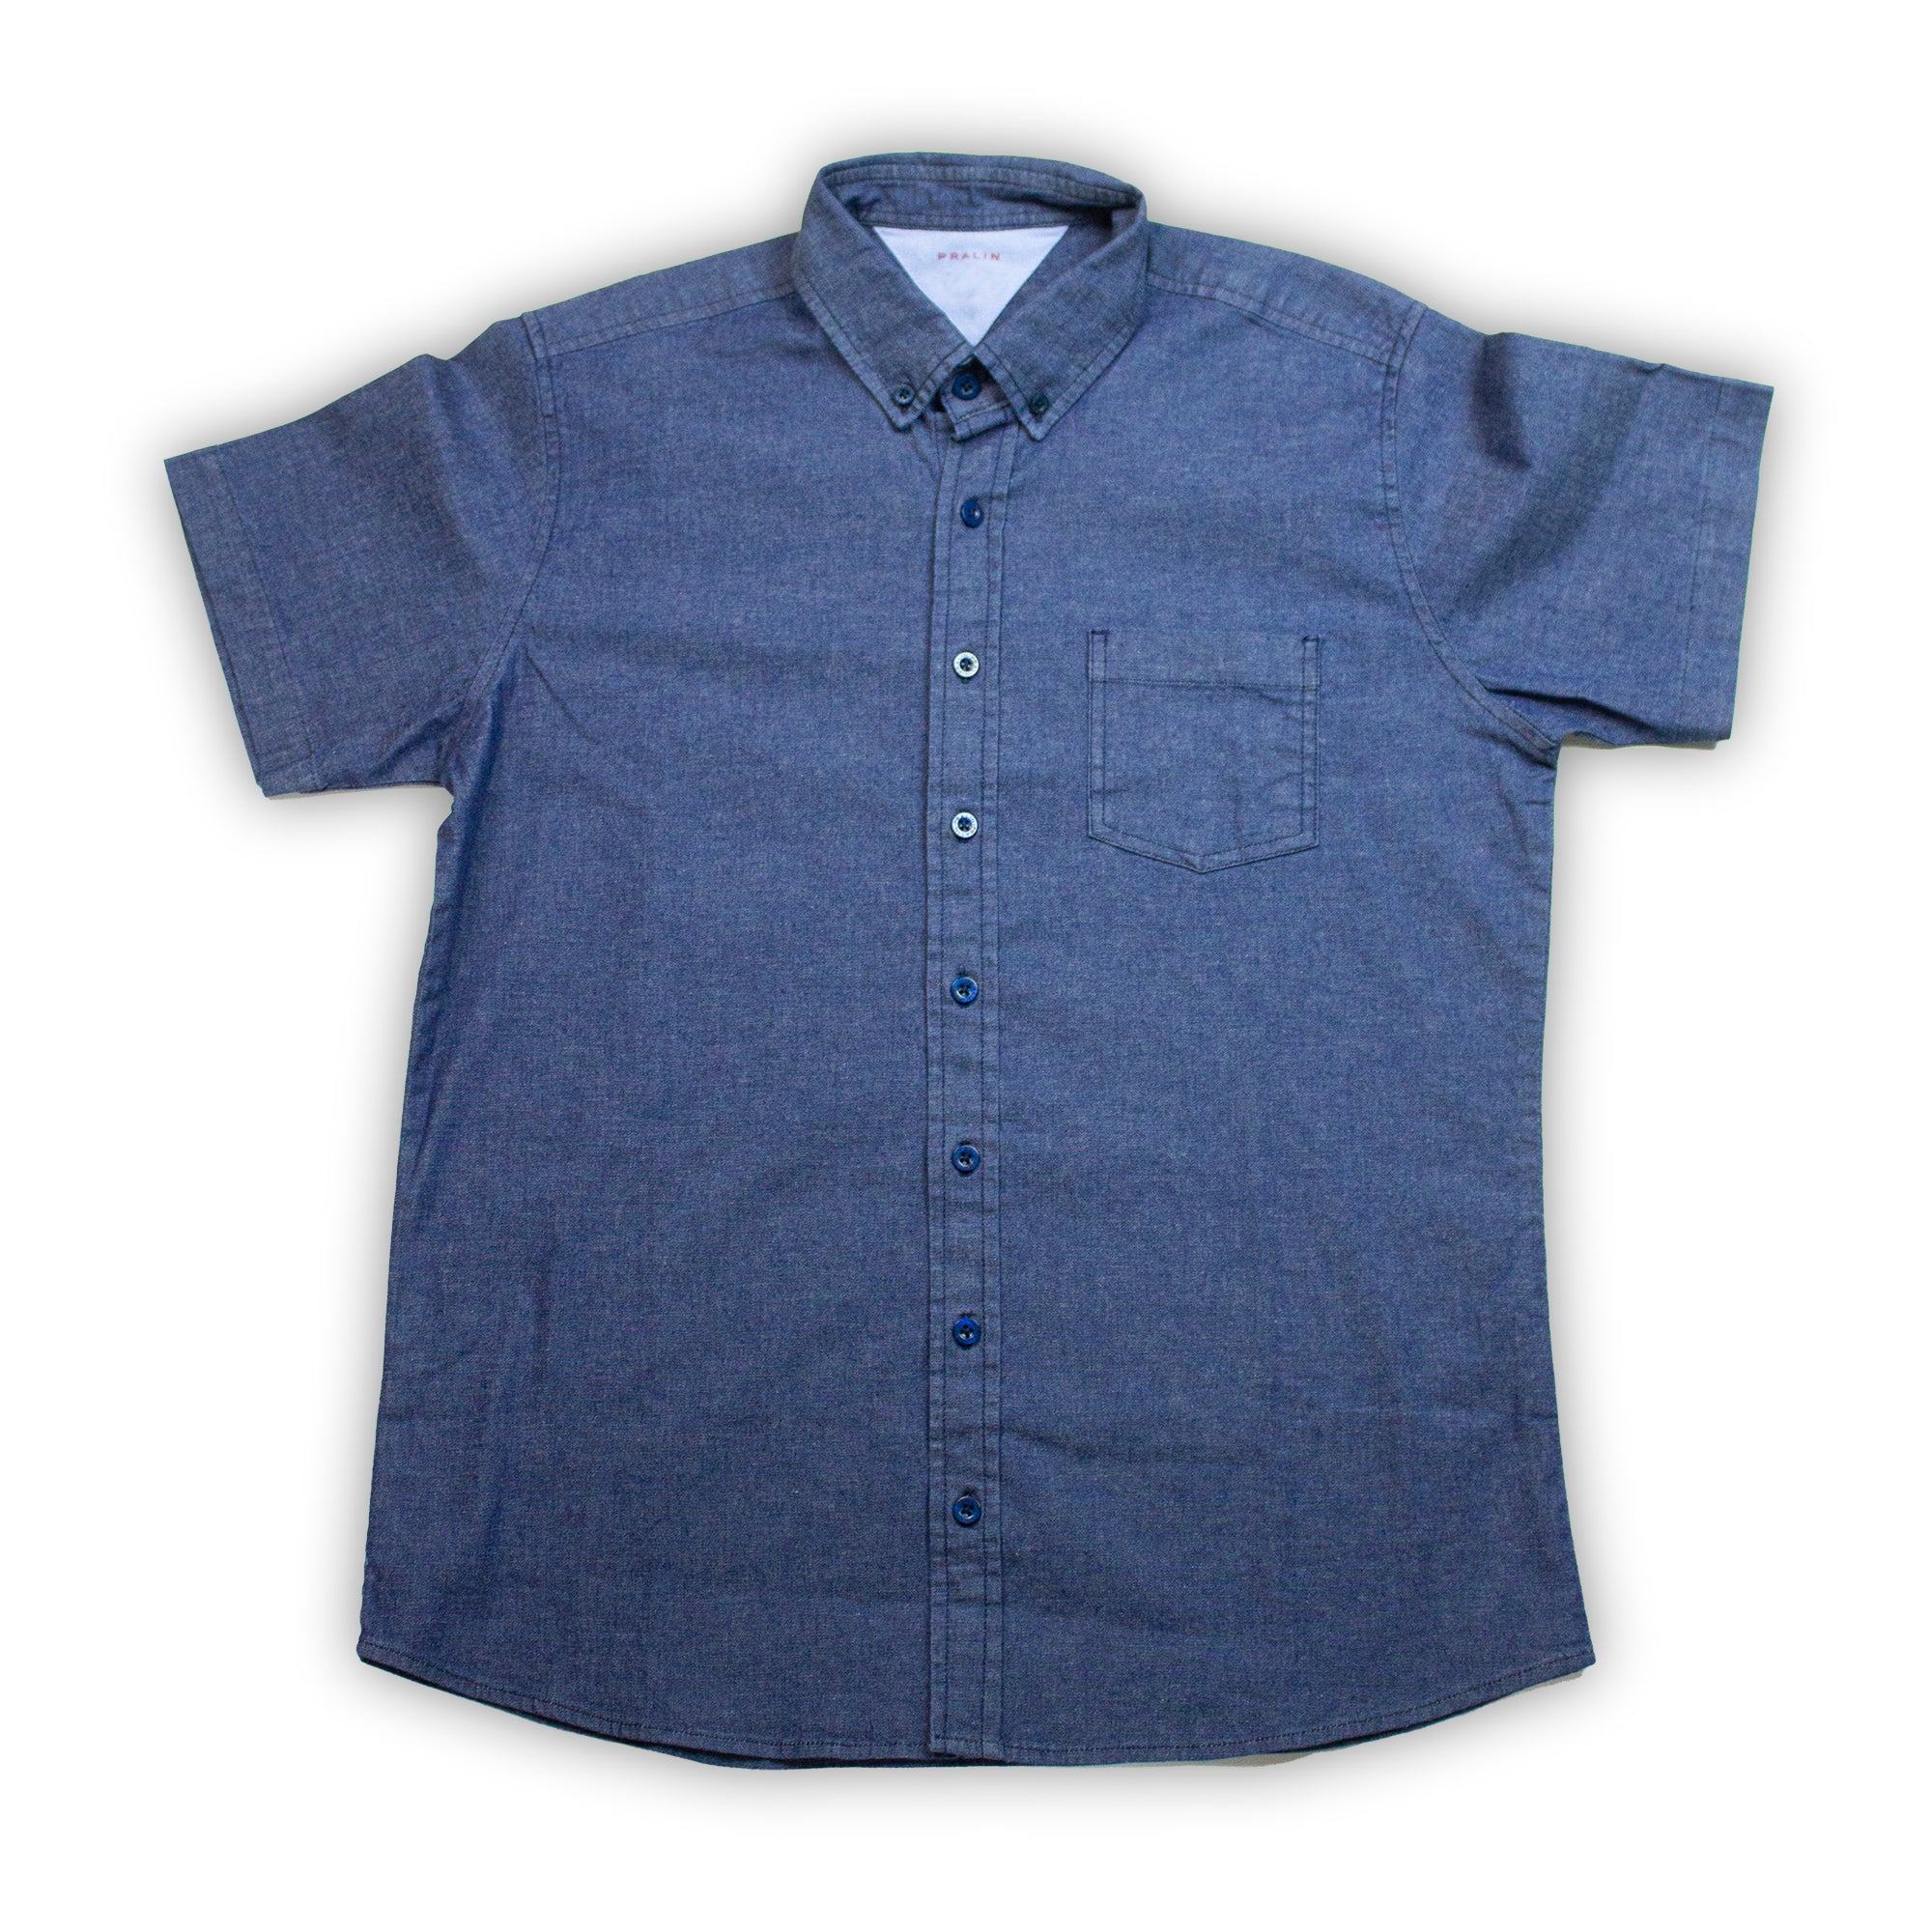 Camisa algodón de manga corta para hombre azul claro Bolf 20501